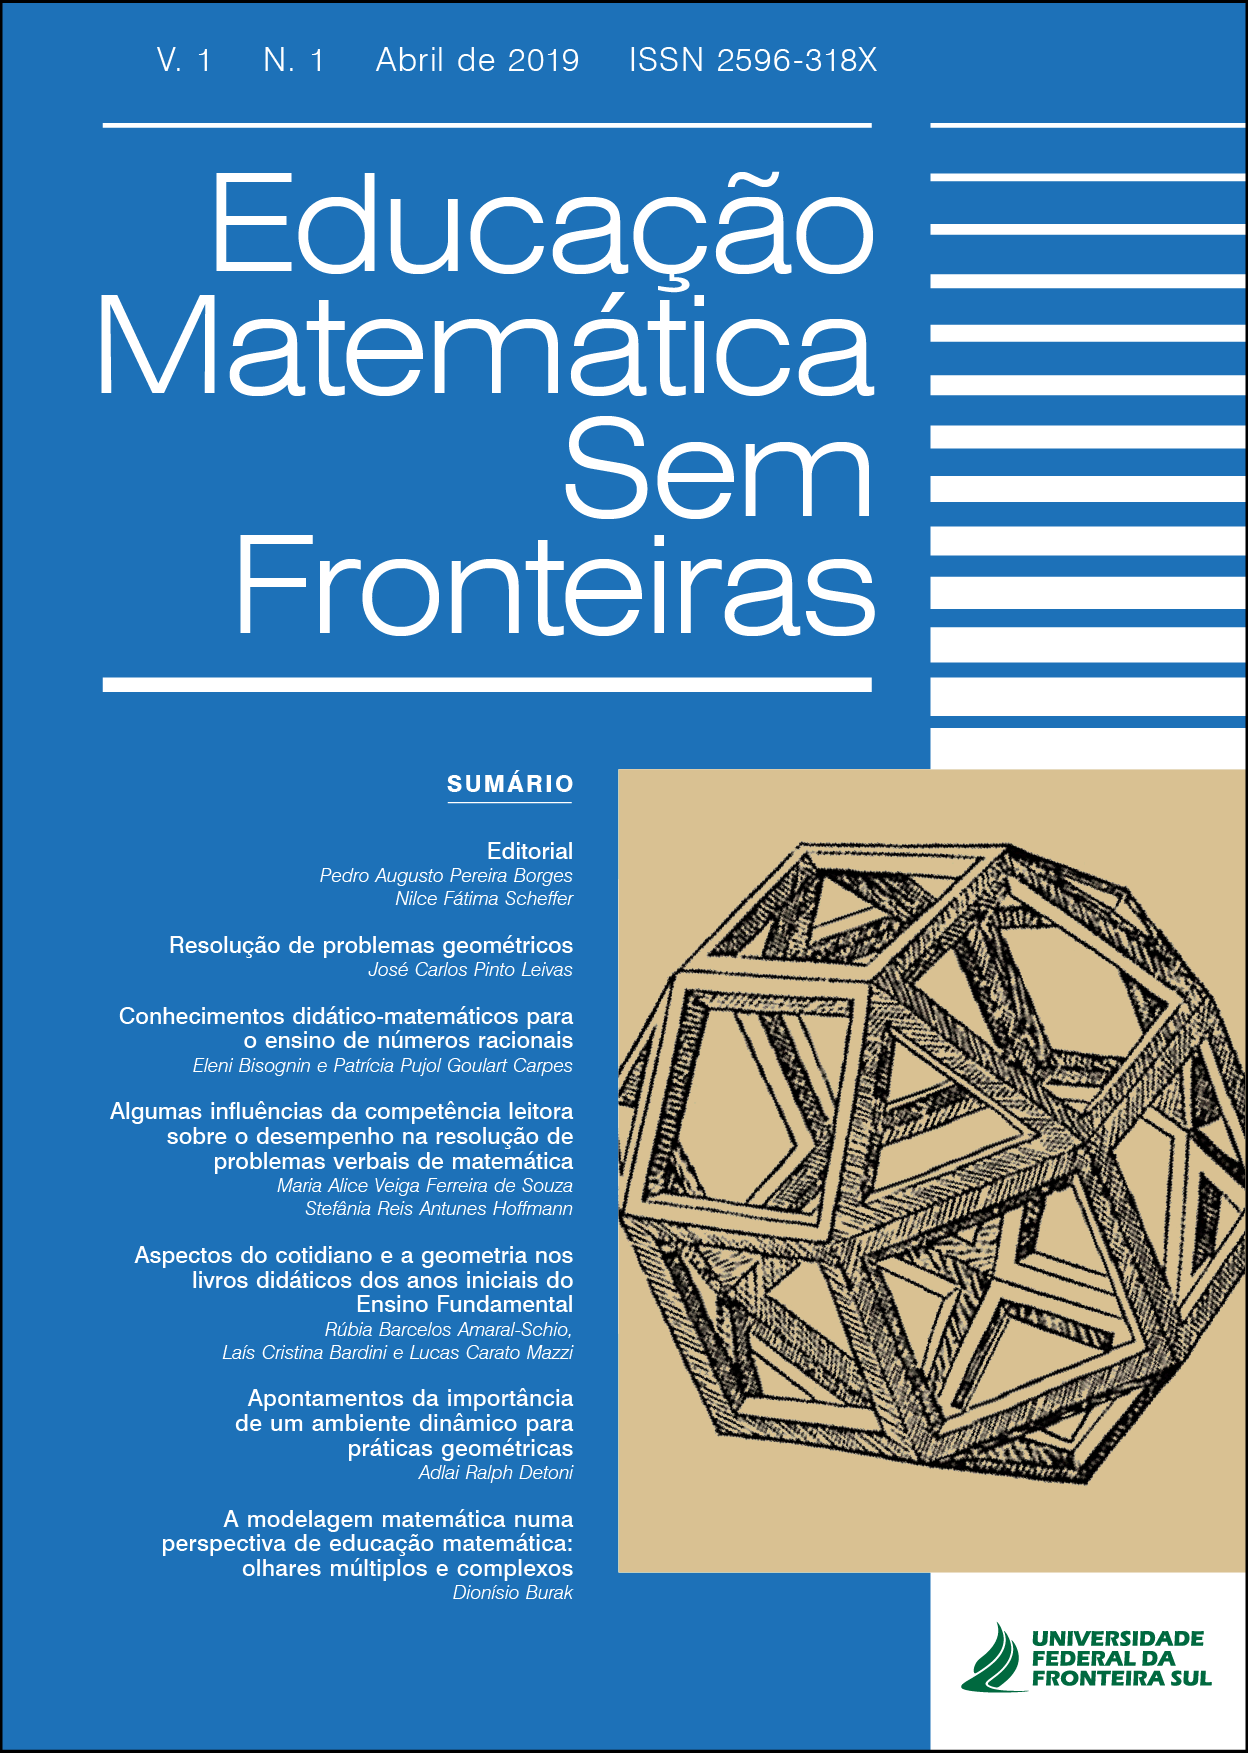 Didática e avaliação:: algumas perspectivas da educação matemática